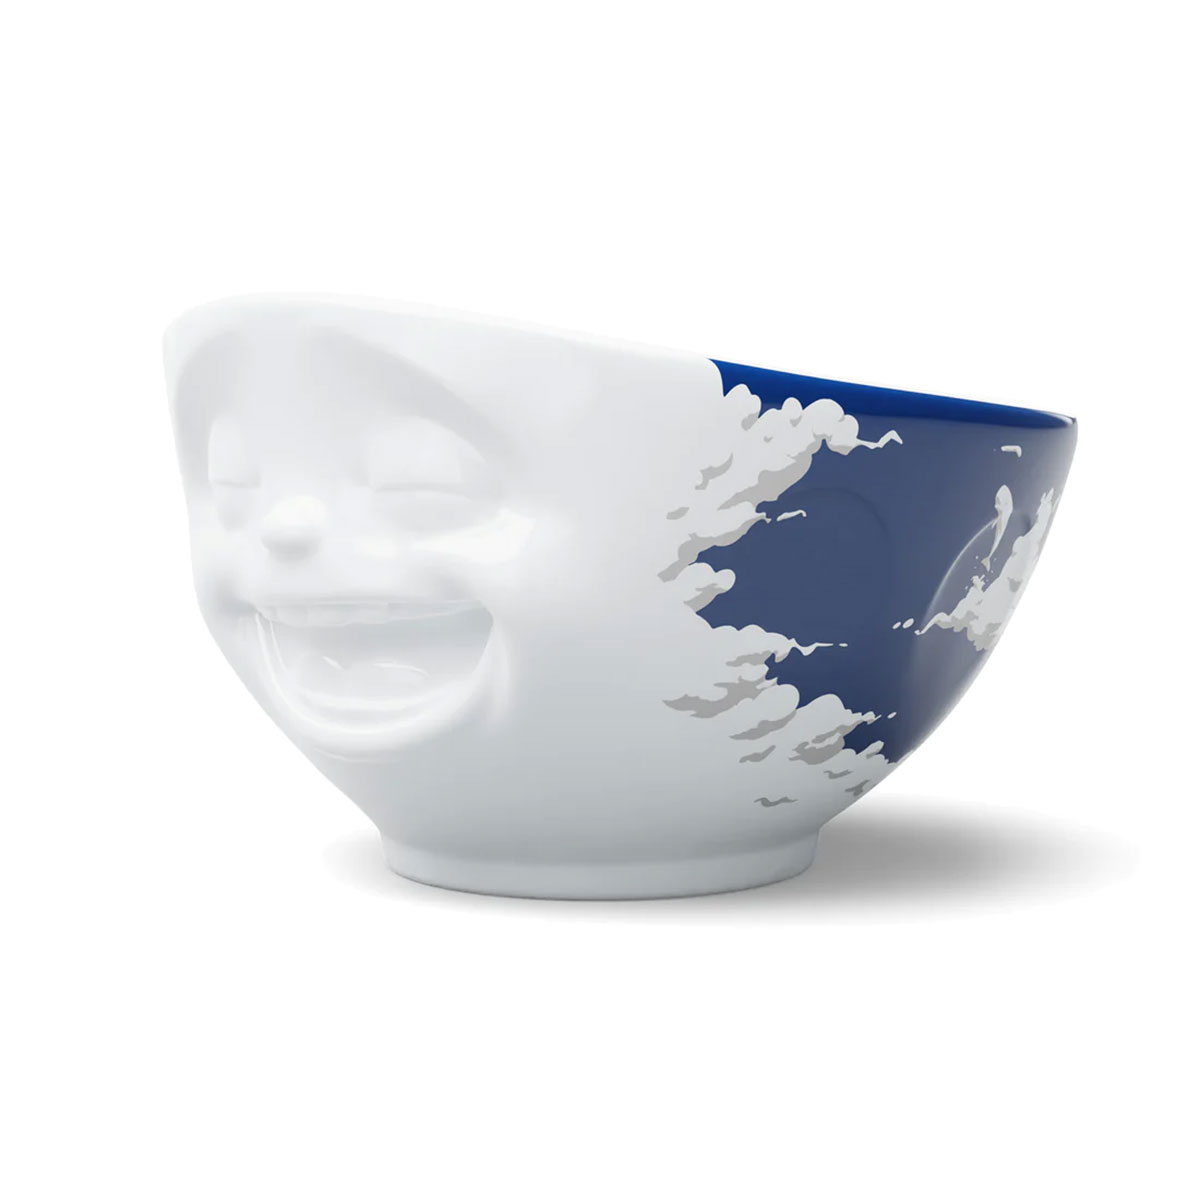 Large white porcelain bowl Tassen 500 ml - Celestial Laughter